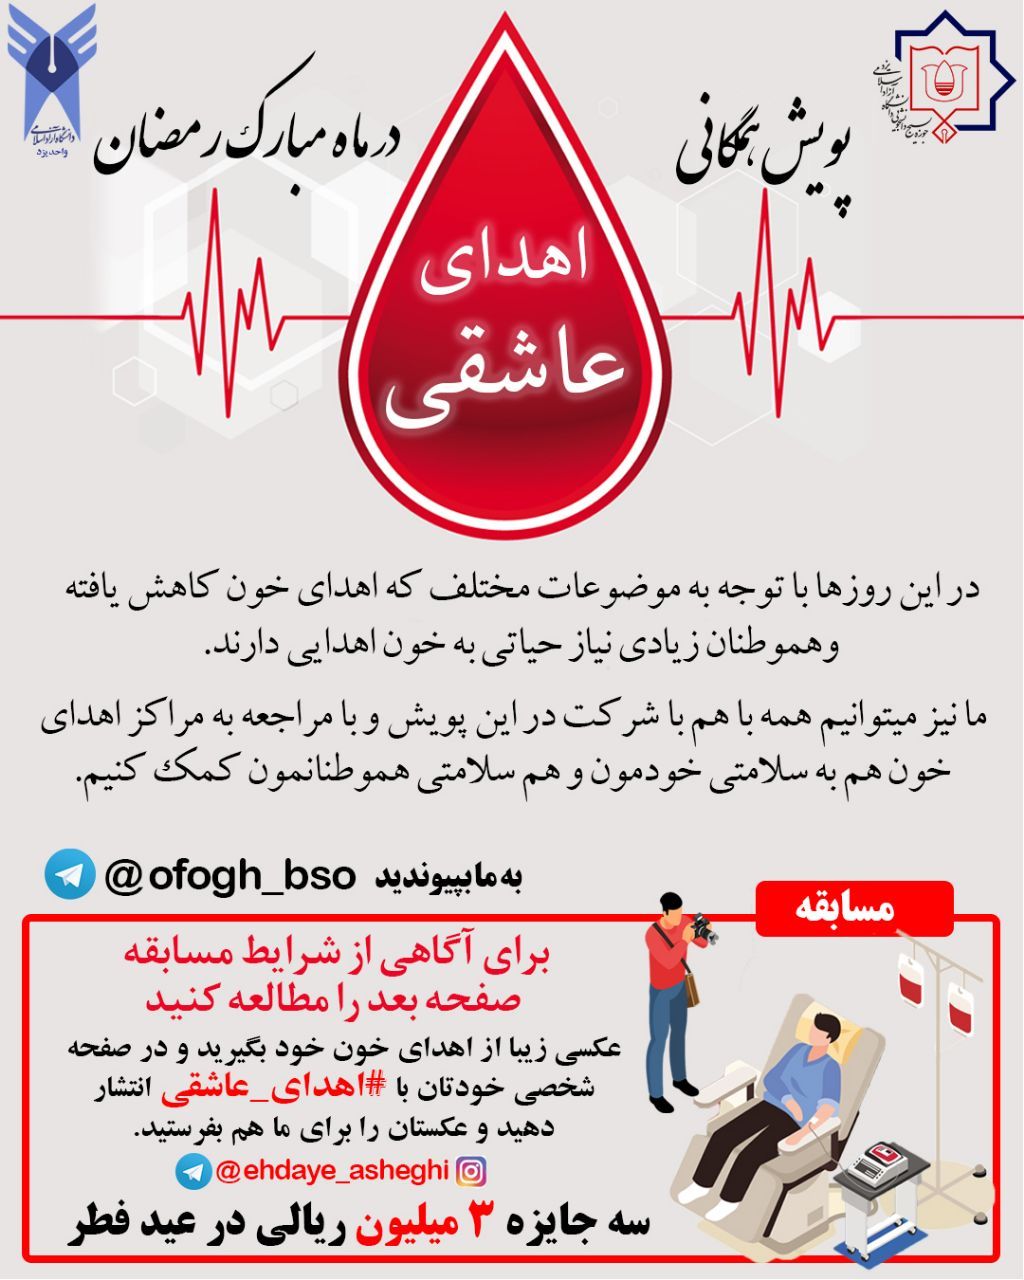 پویش اهدای عاشقی به همت بسیج دانشجویی دانشگاه آزاد یزد راه اندازی شد